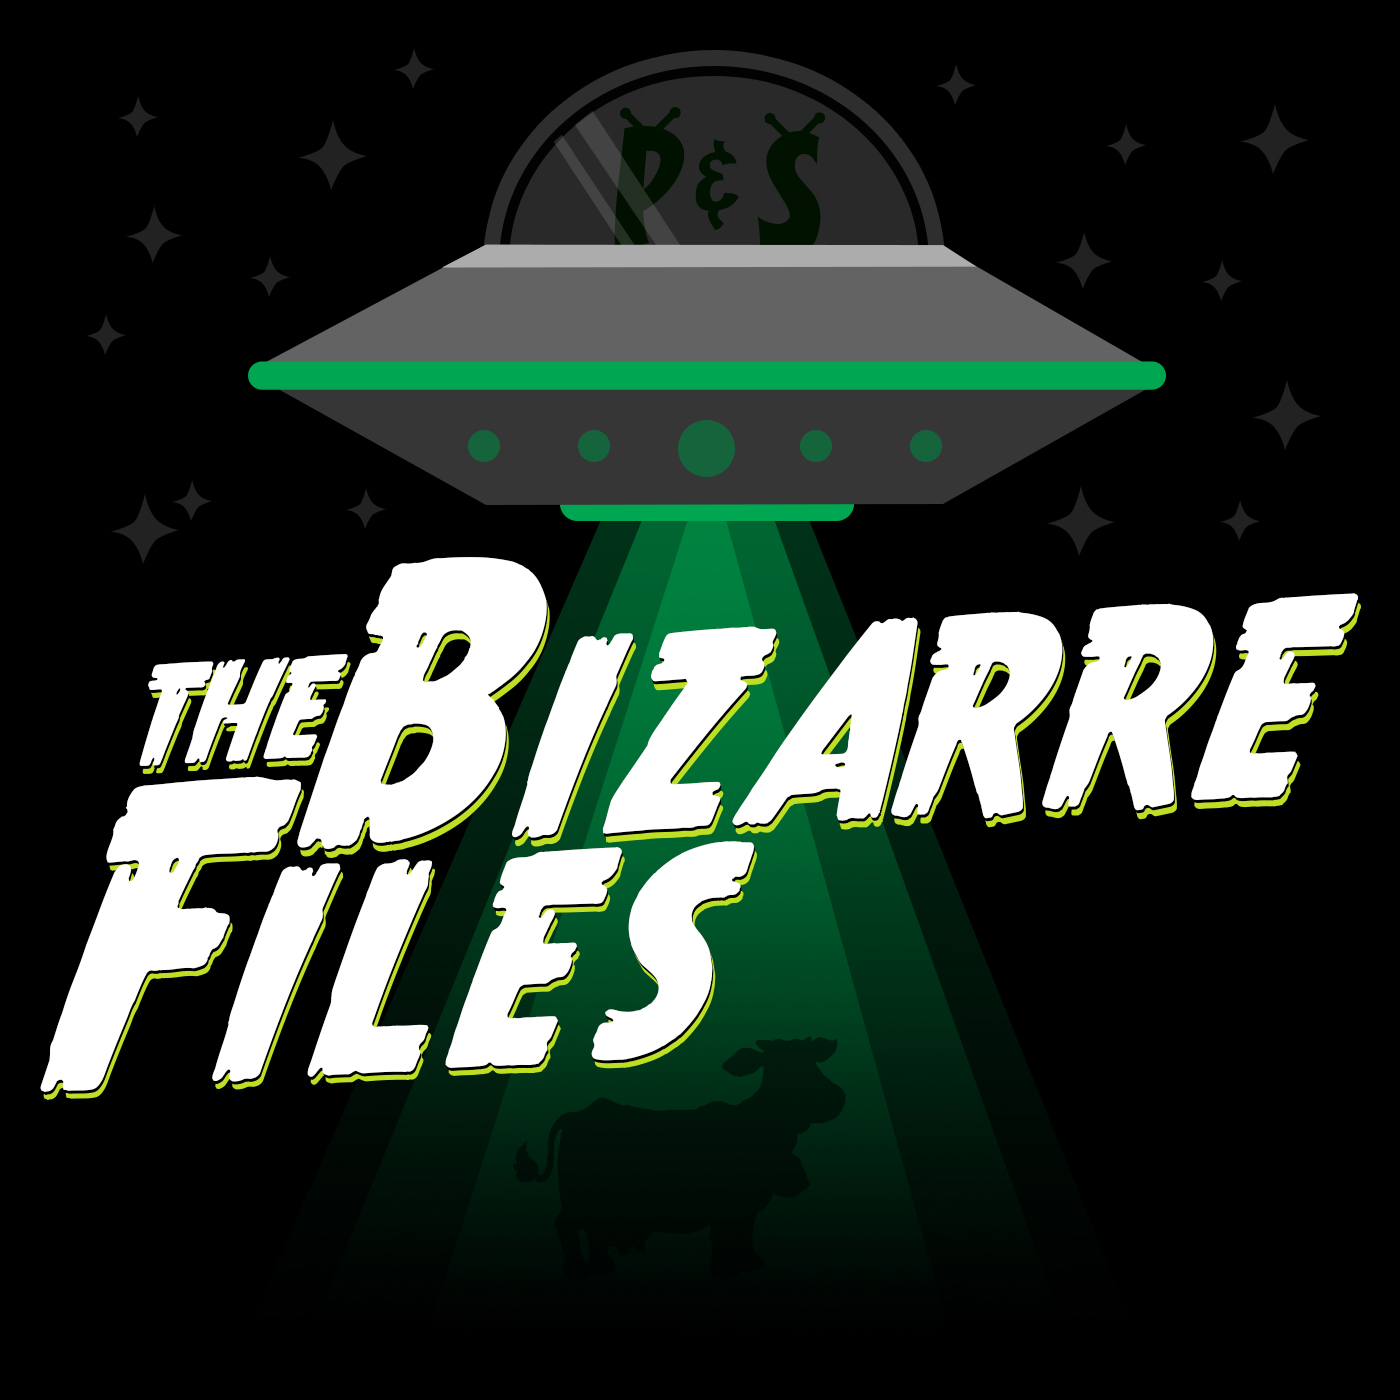 The Bizarre Files #1383